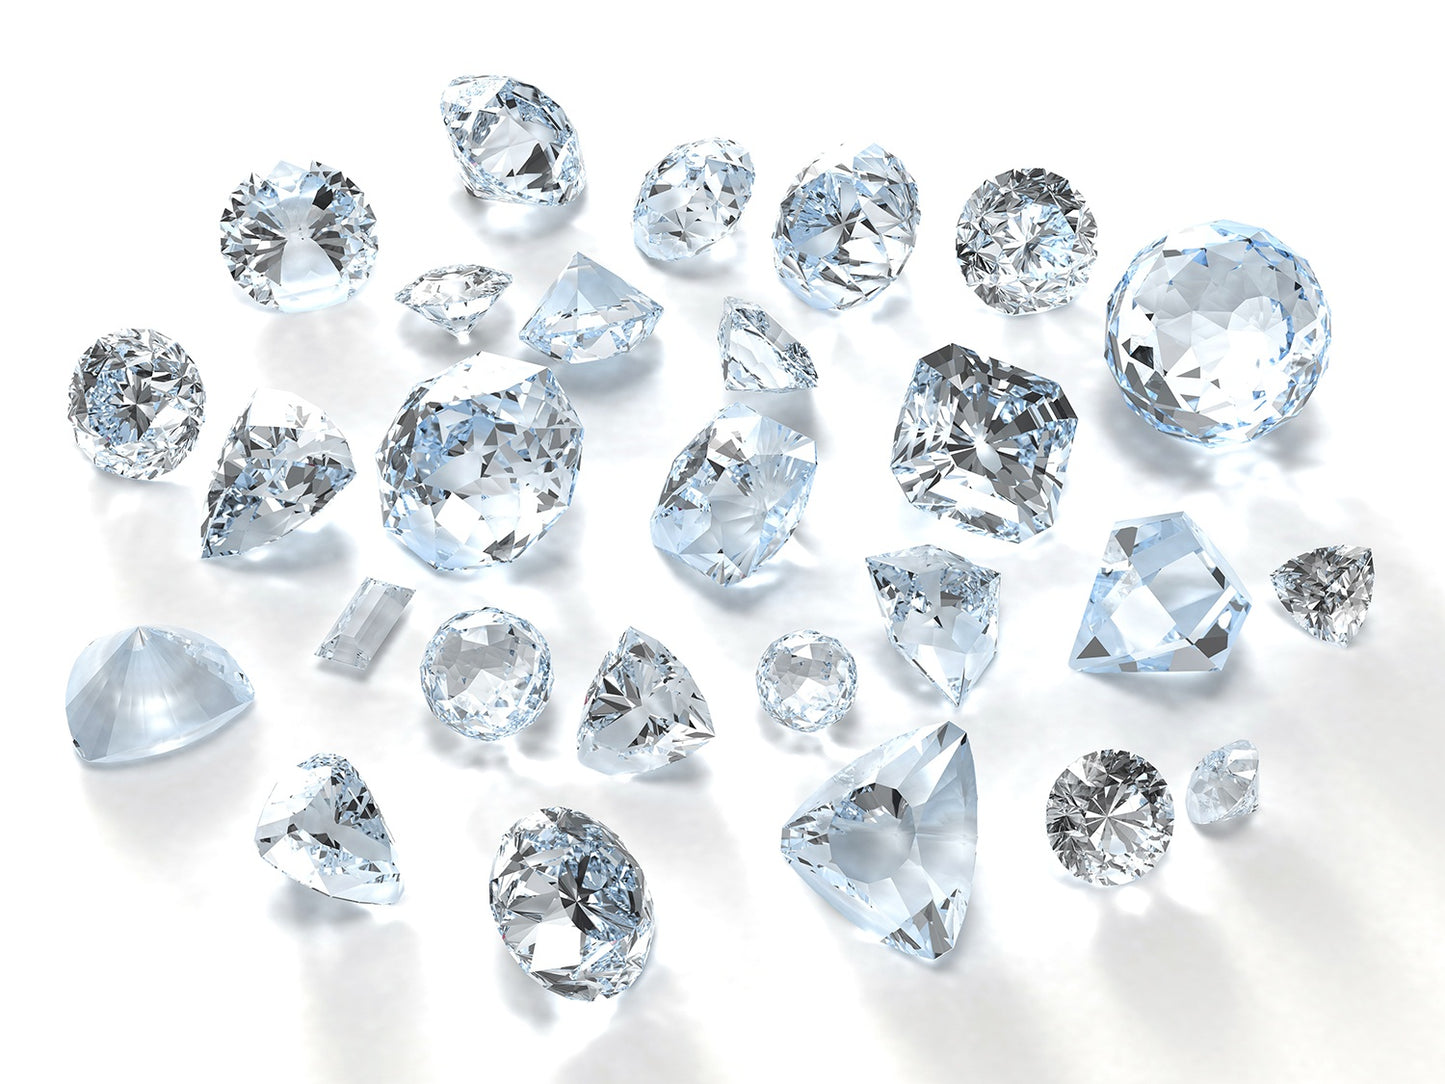 Silver Diamond Matching Set 🤩 [Video]